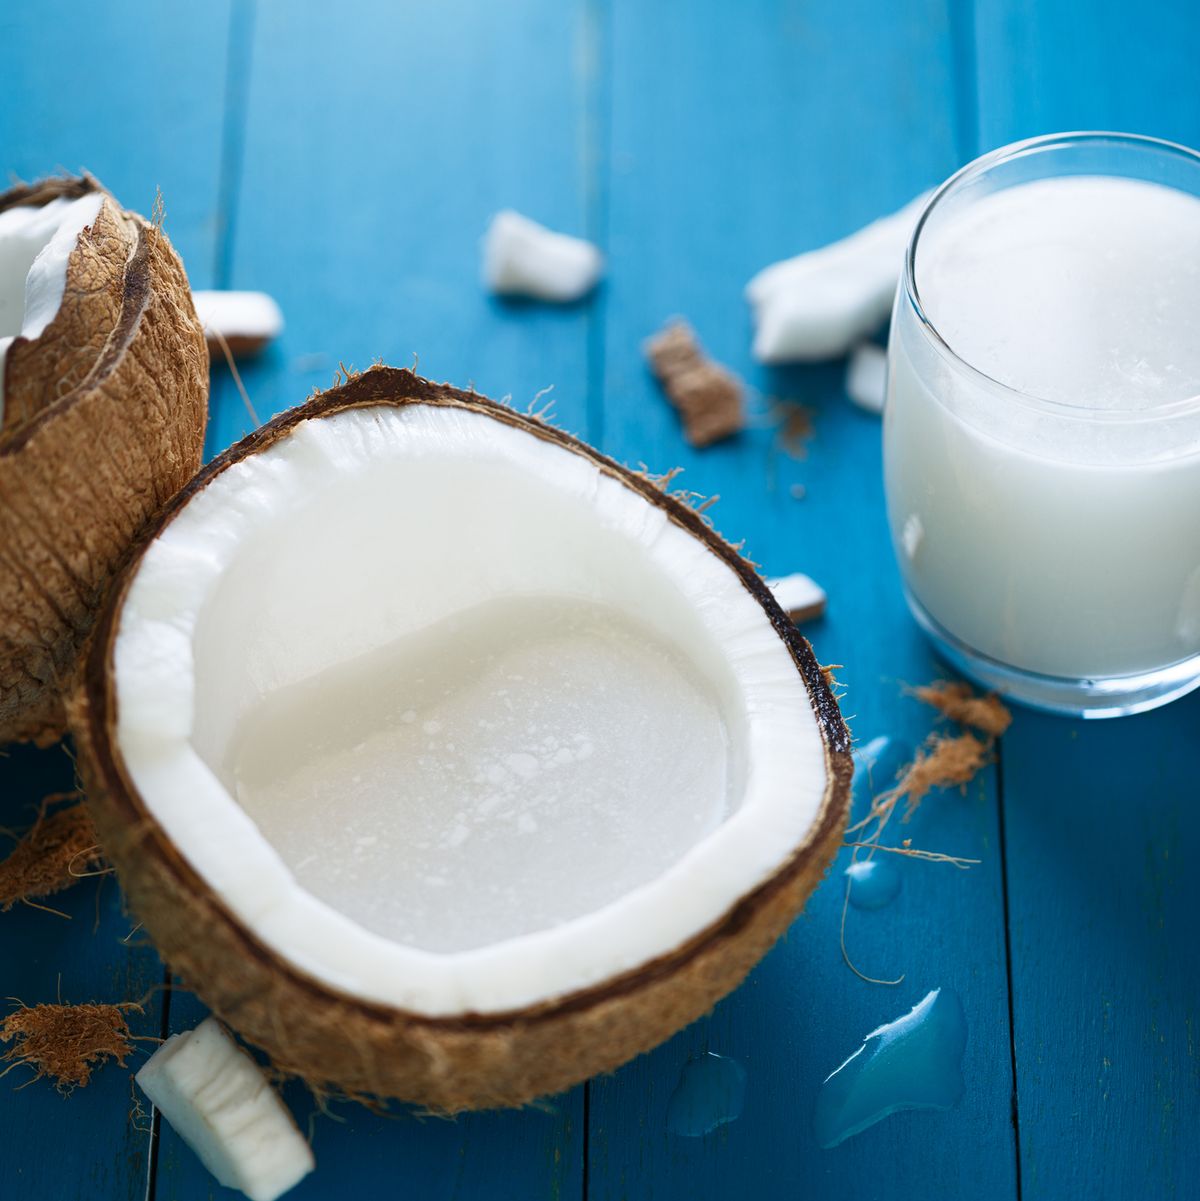 Coconut Milk - Tu Super To Go